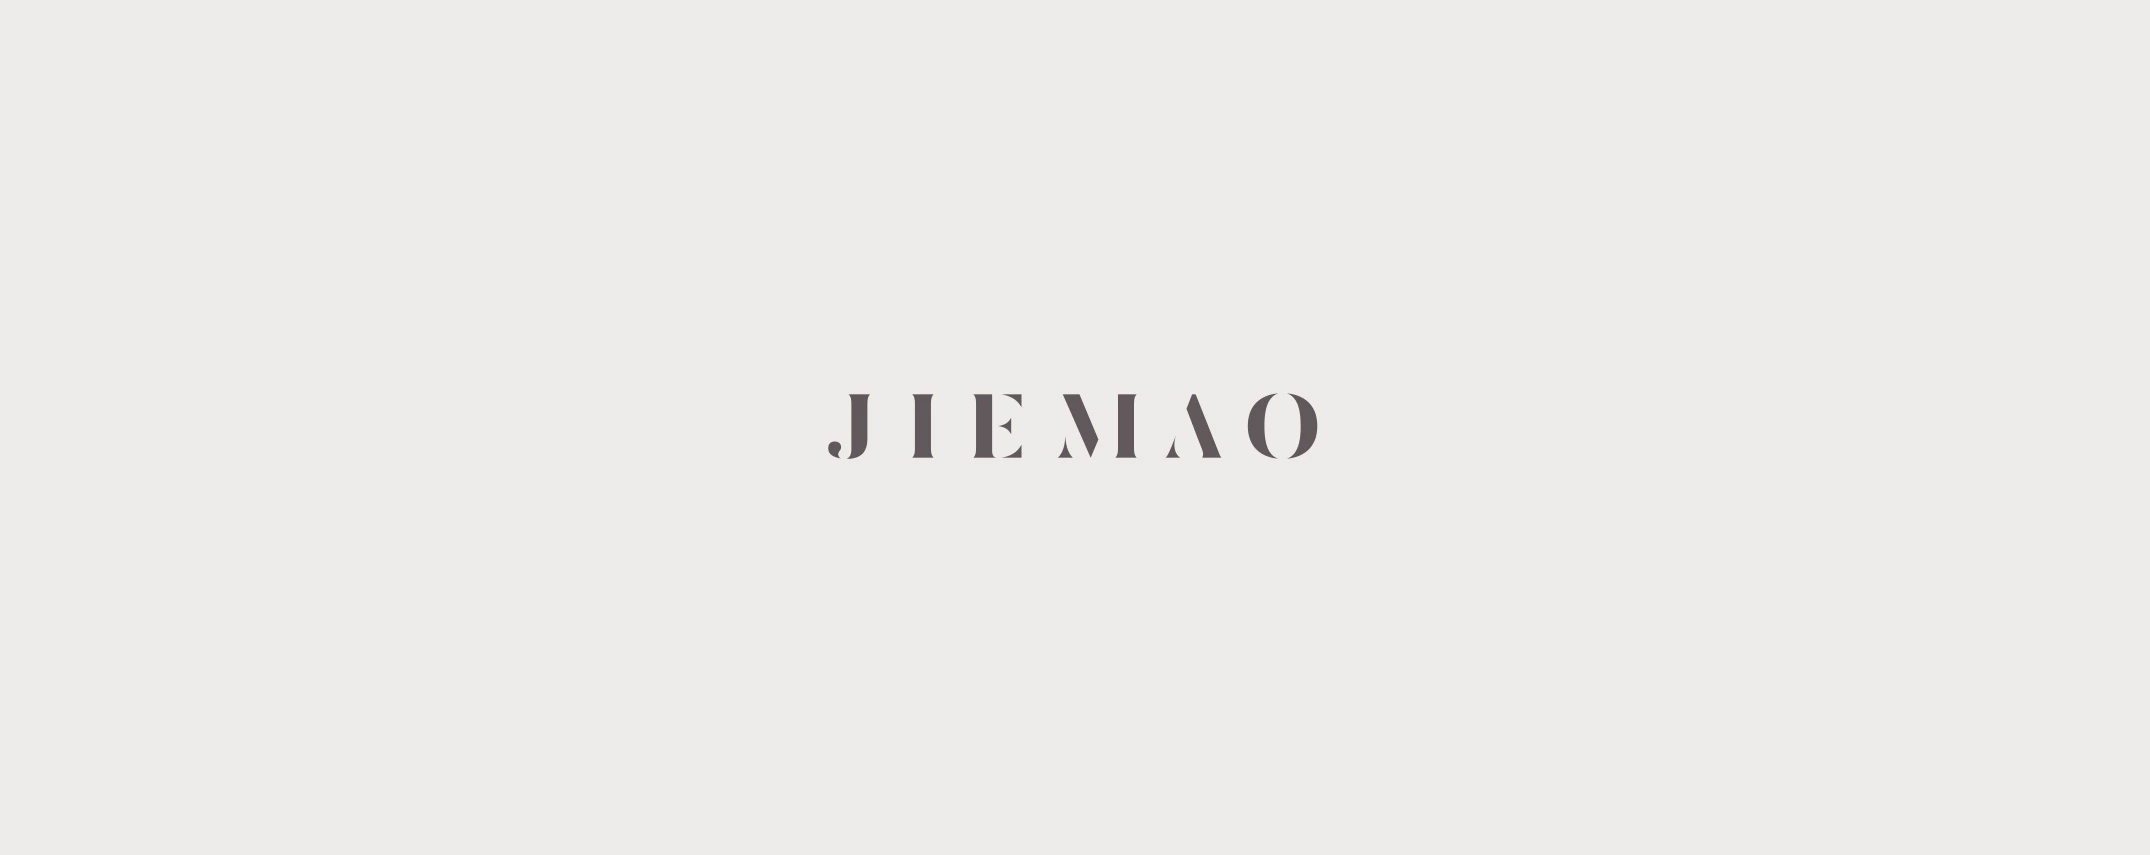 Jiemao logo